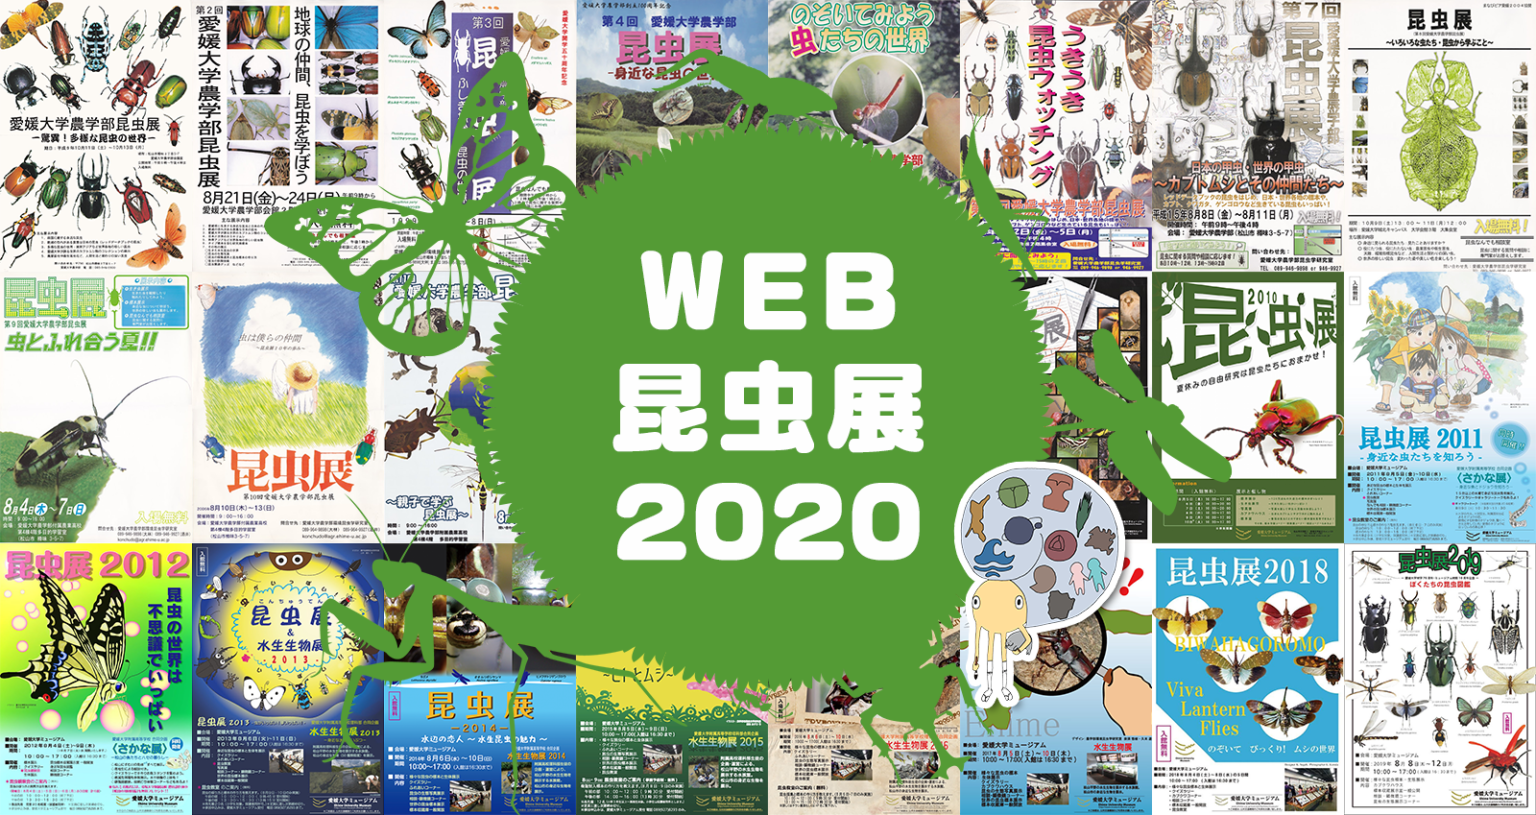 愛媛大学ミュージアムweb昆虫展2020に資料提供しました